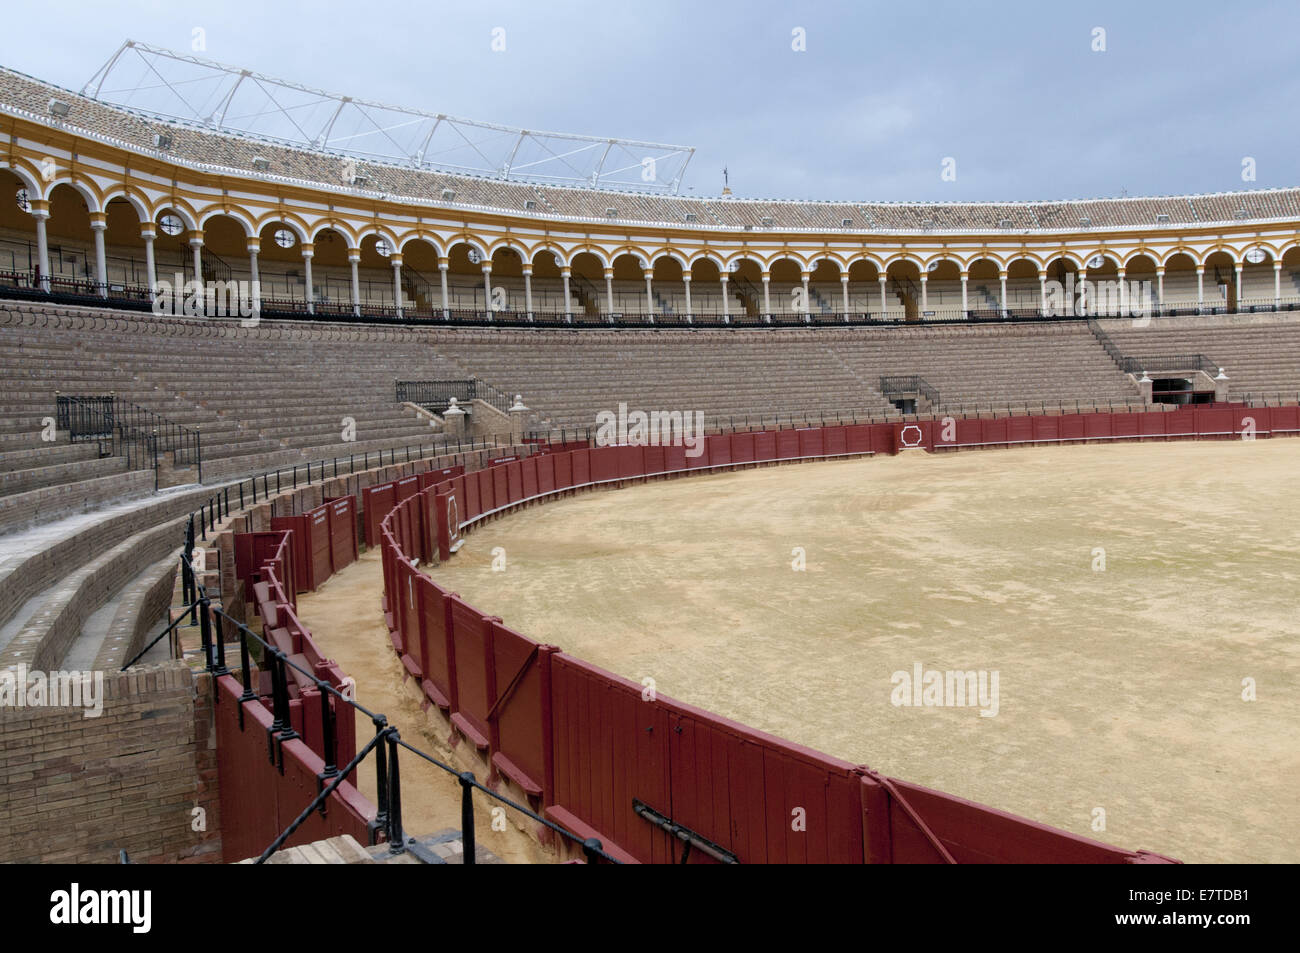 Seville bull fighting ring Stock Photo